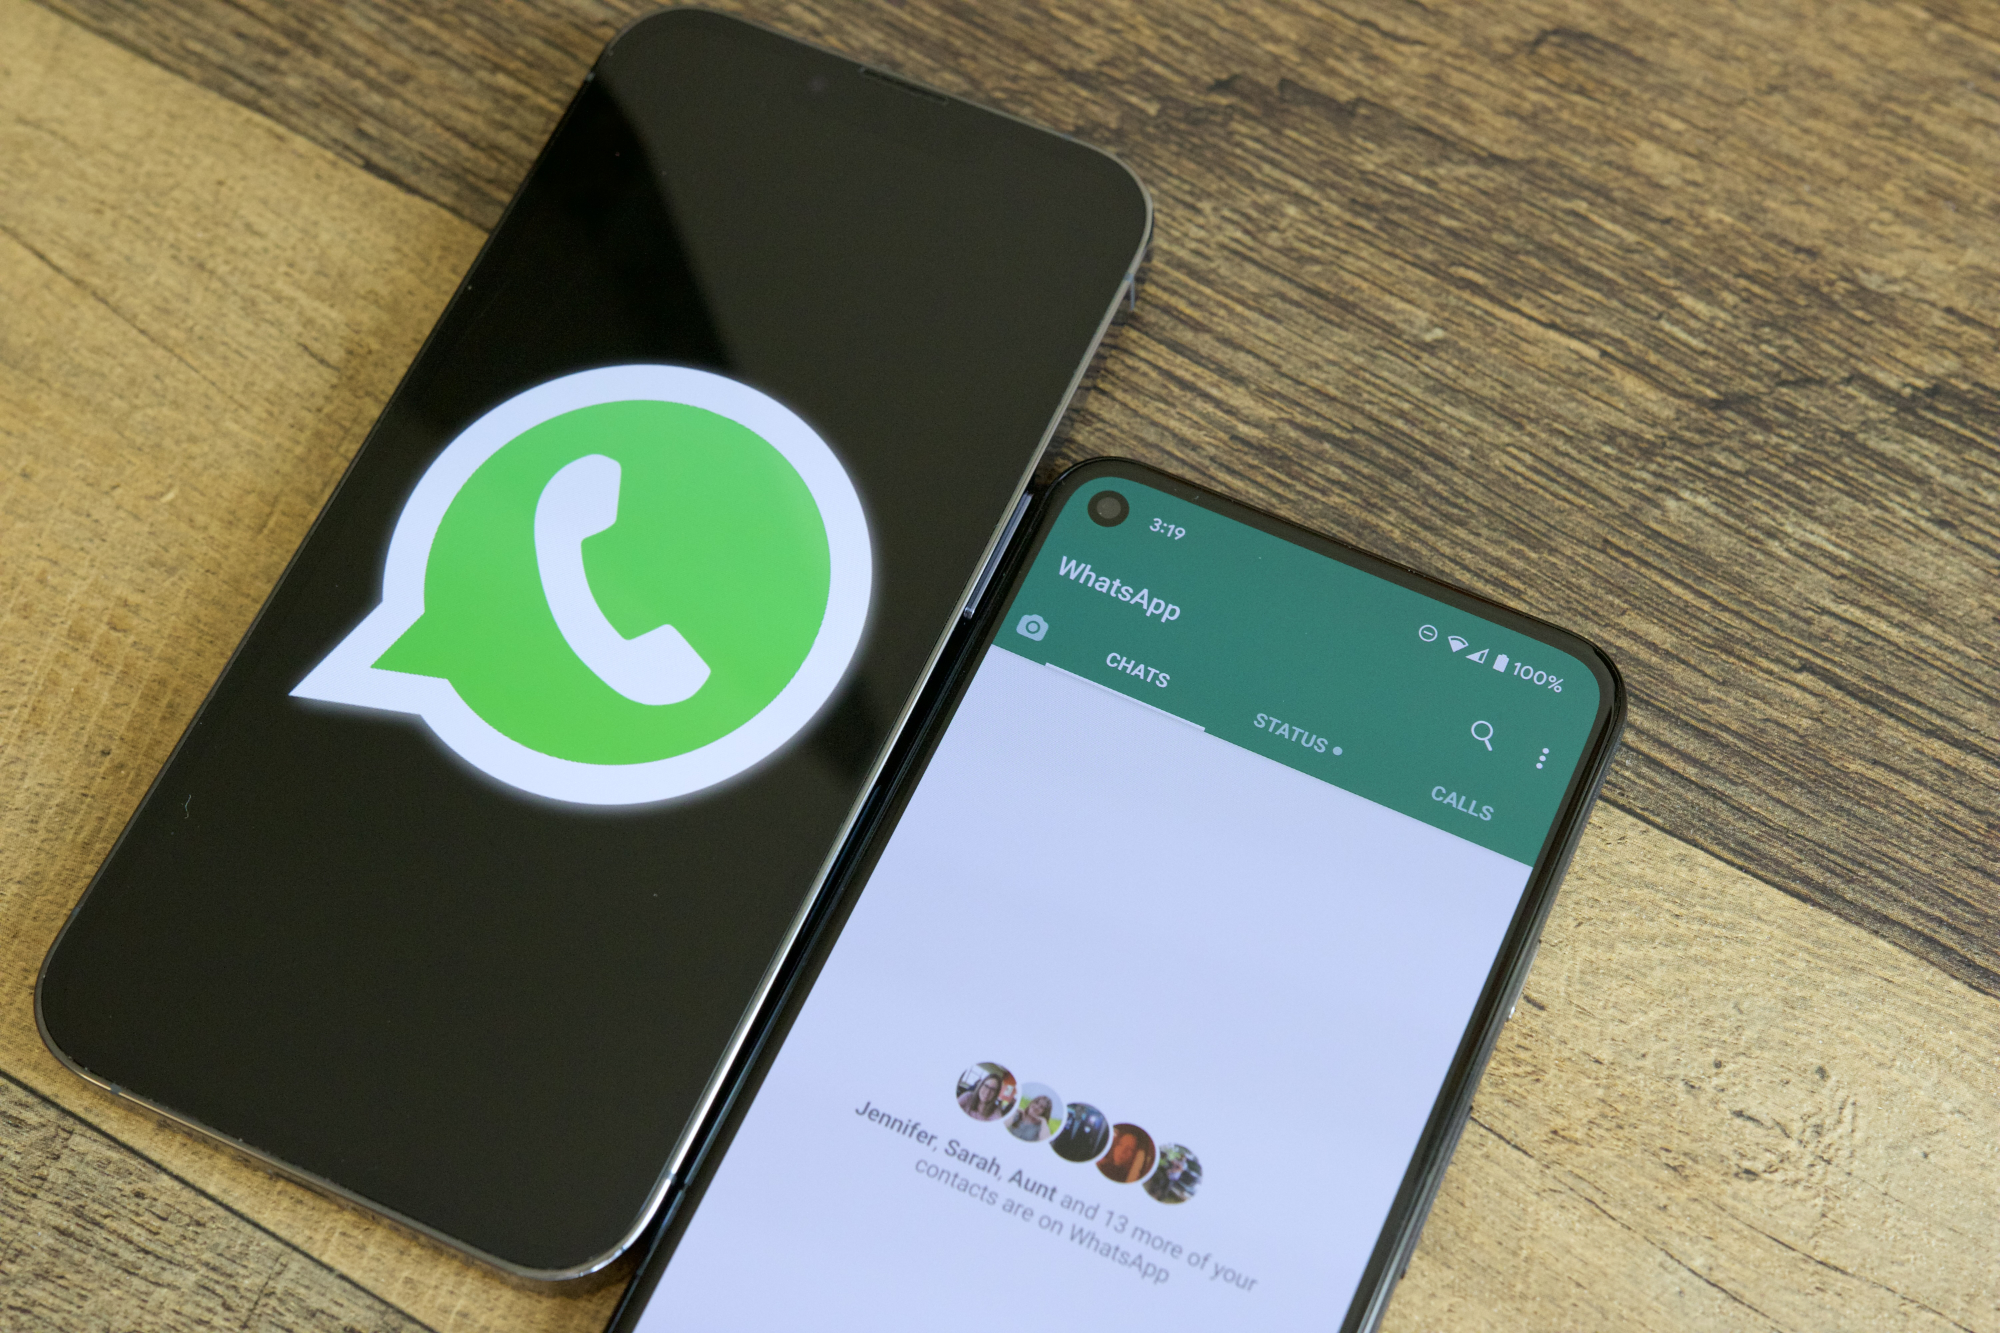 Dois telefones em uma mesa um ao lado do outro.  Um está mostrando o logotipo do WhatsApp e o outro está executando o aplicativo WhatsApp.